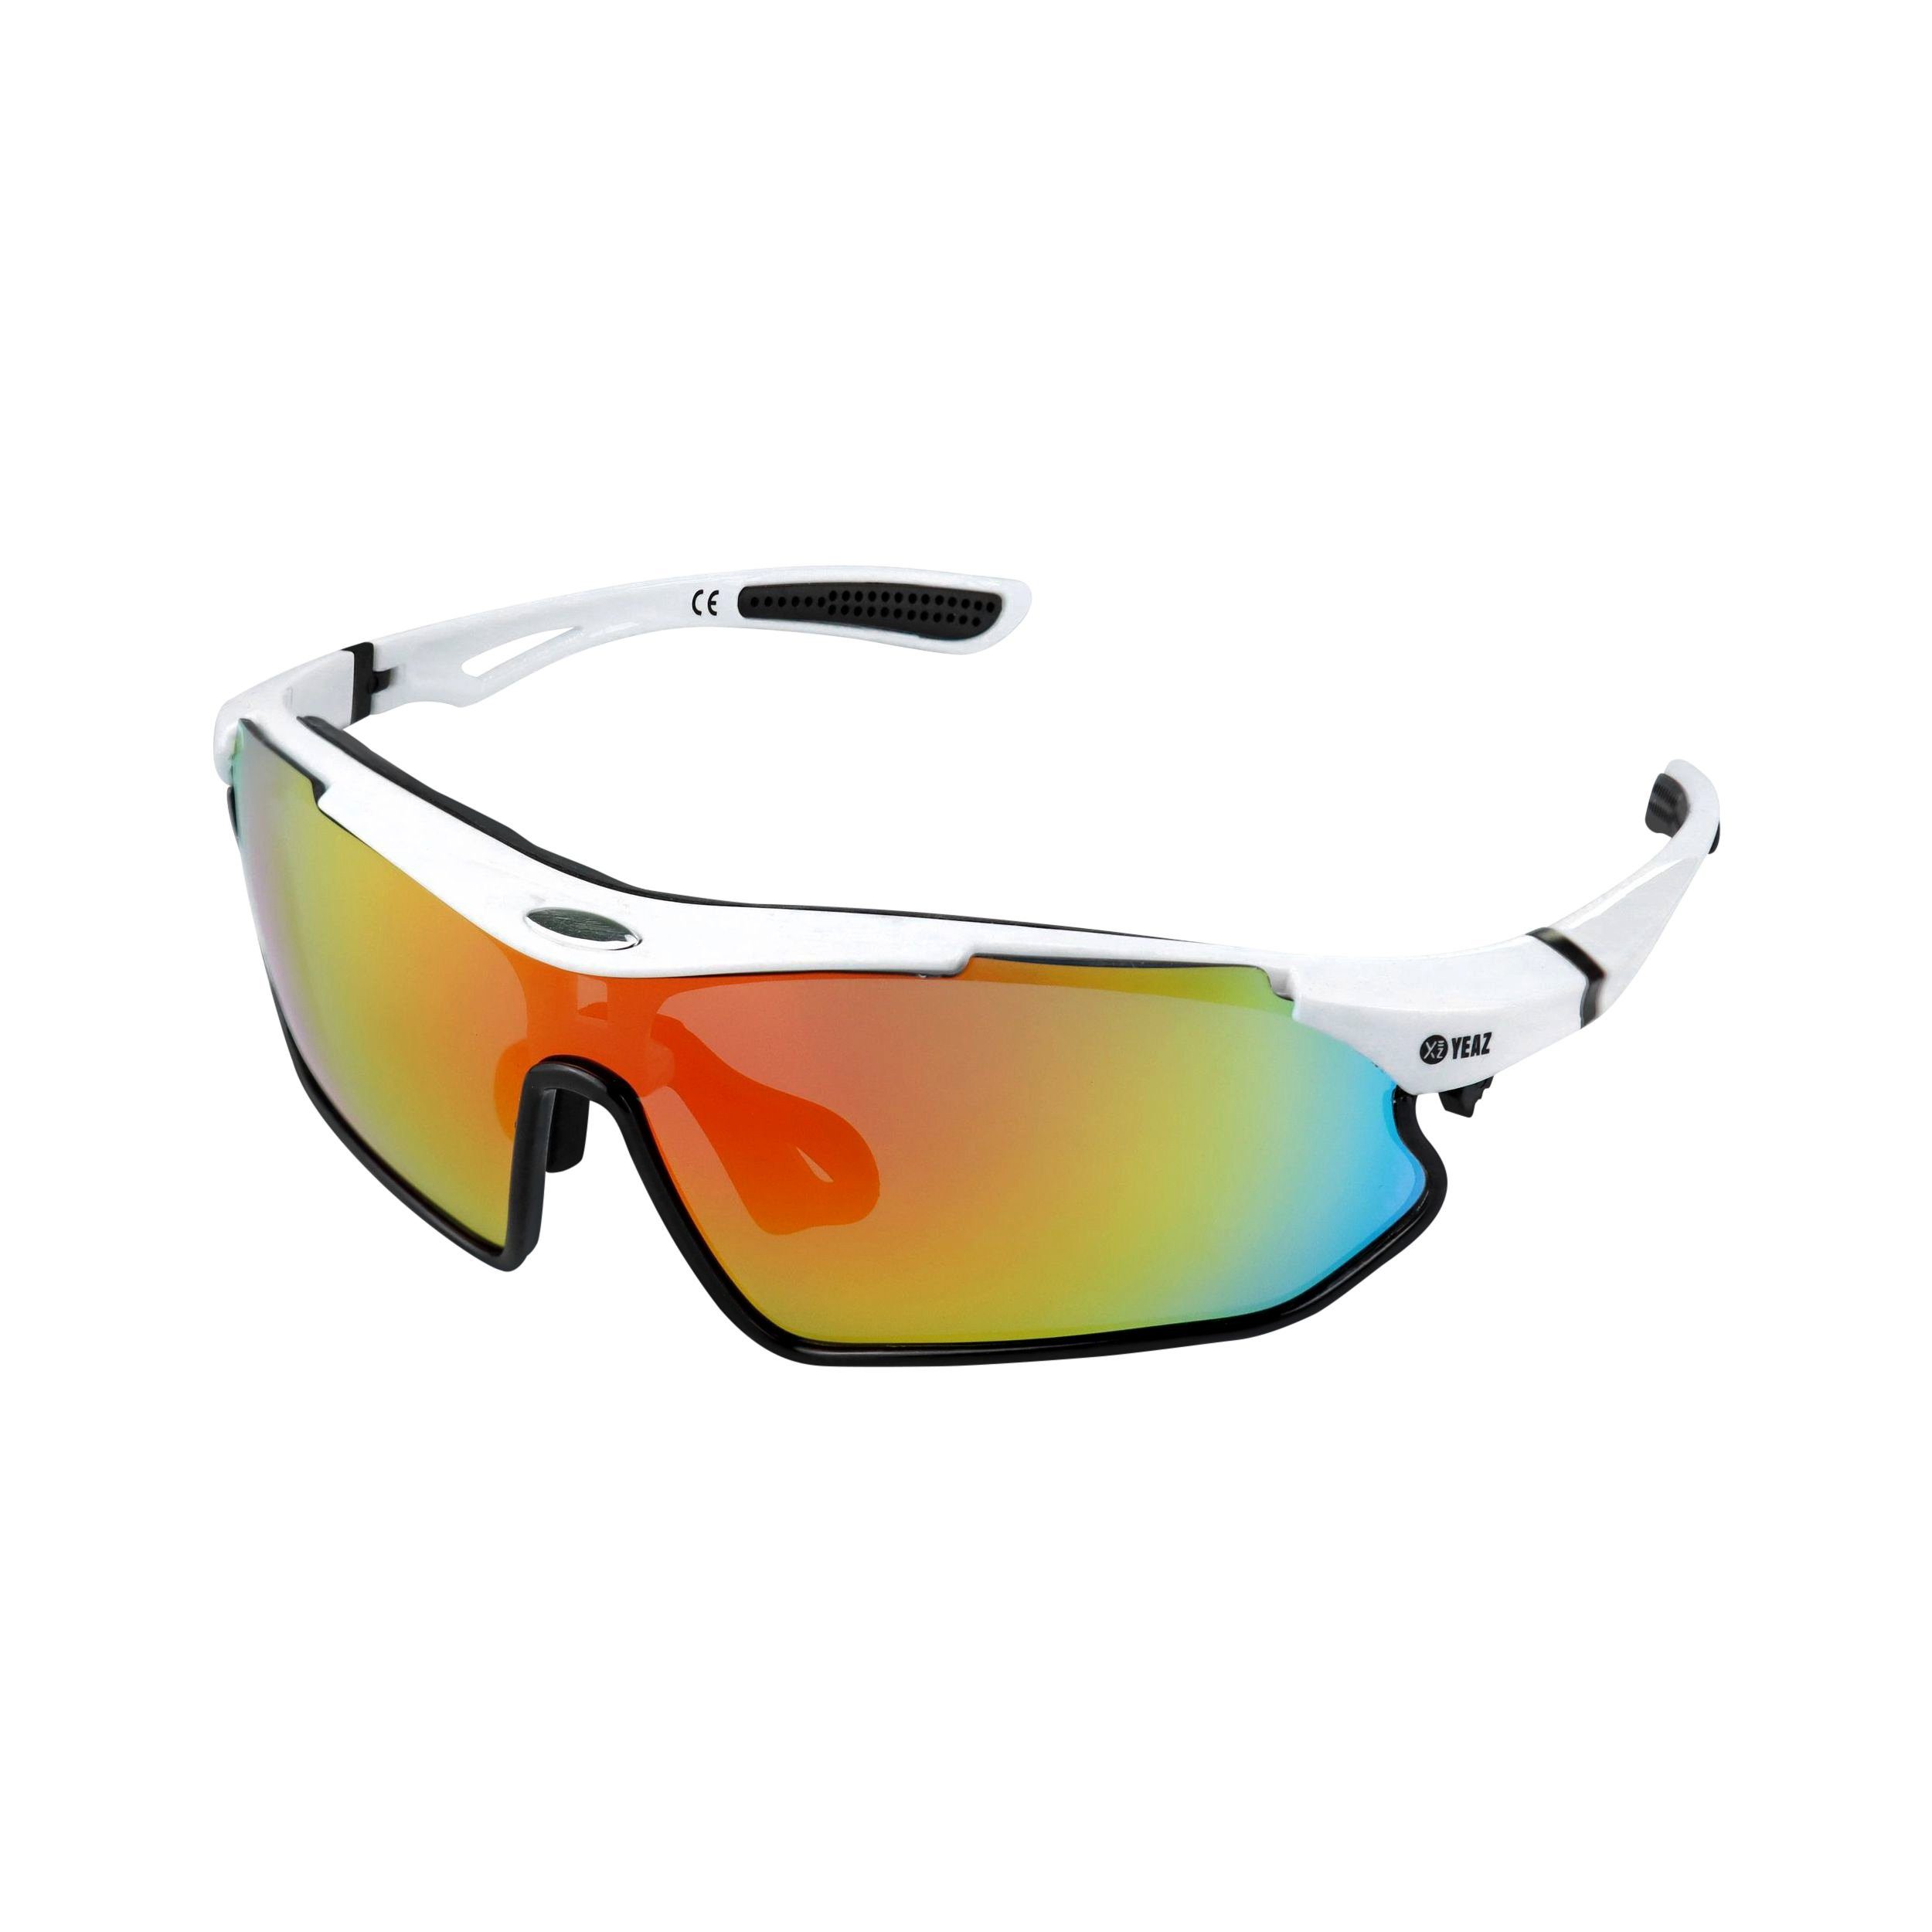 YEAZ Sportbrille SUNRAY sport-sonnenbrille weiß/schwarz/rot, weiß/schwarz/rot Sport-Sonnenbrille